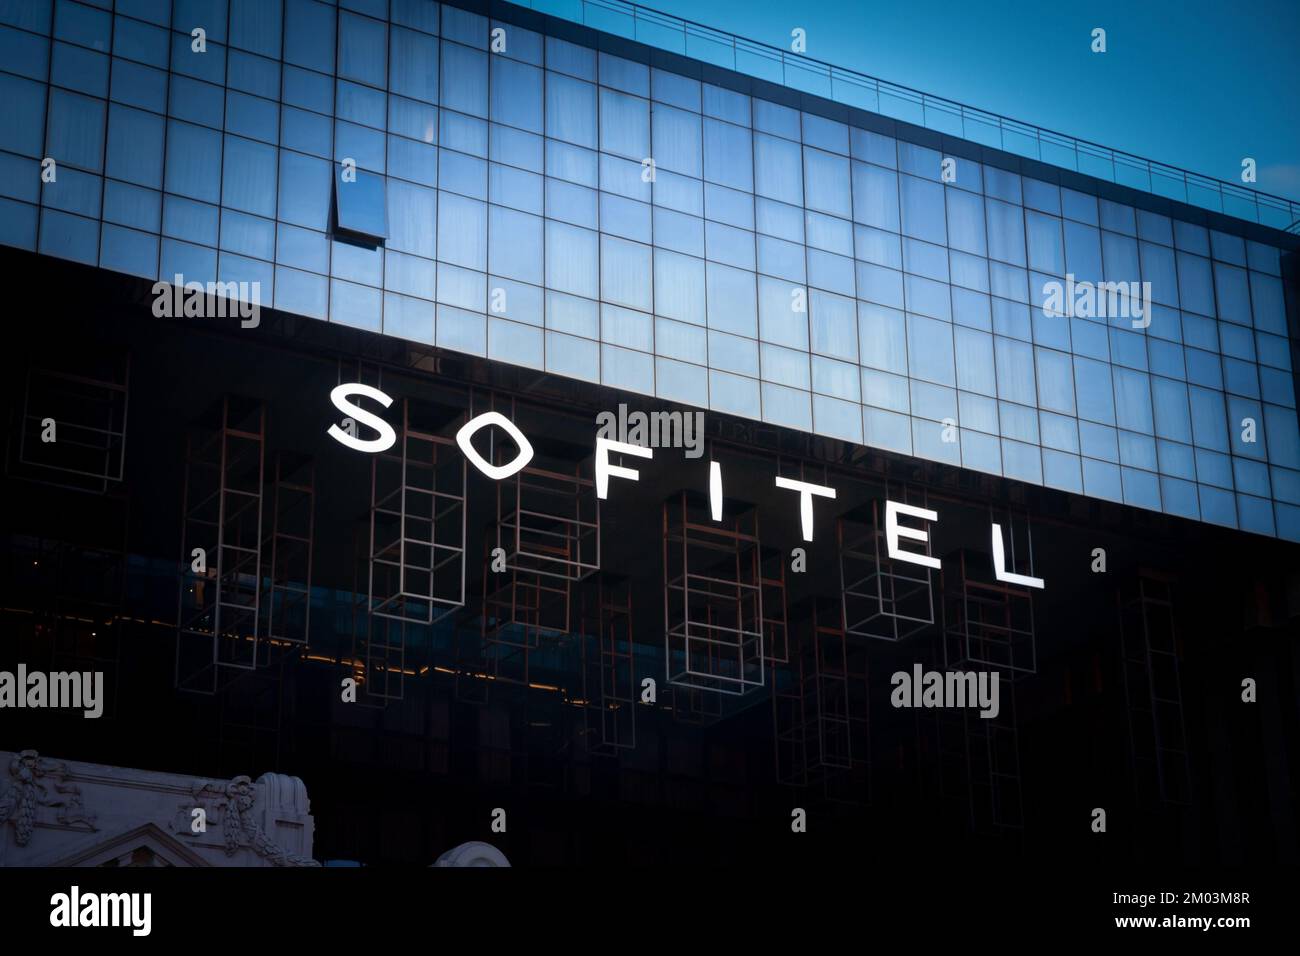 Imagen de un cartel con el logotipo de Sofitel en su hotel de Estambul. Sofitel Hotels & Resorts es una cadena francesa de hoteles de lujo con sede en París, Foto de stock